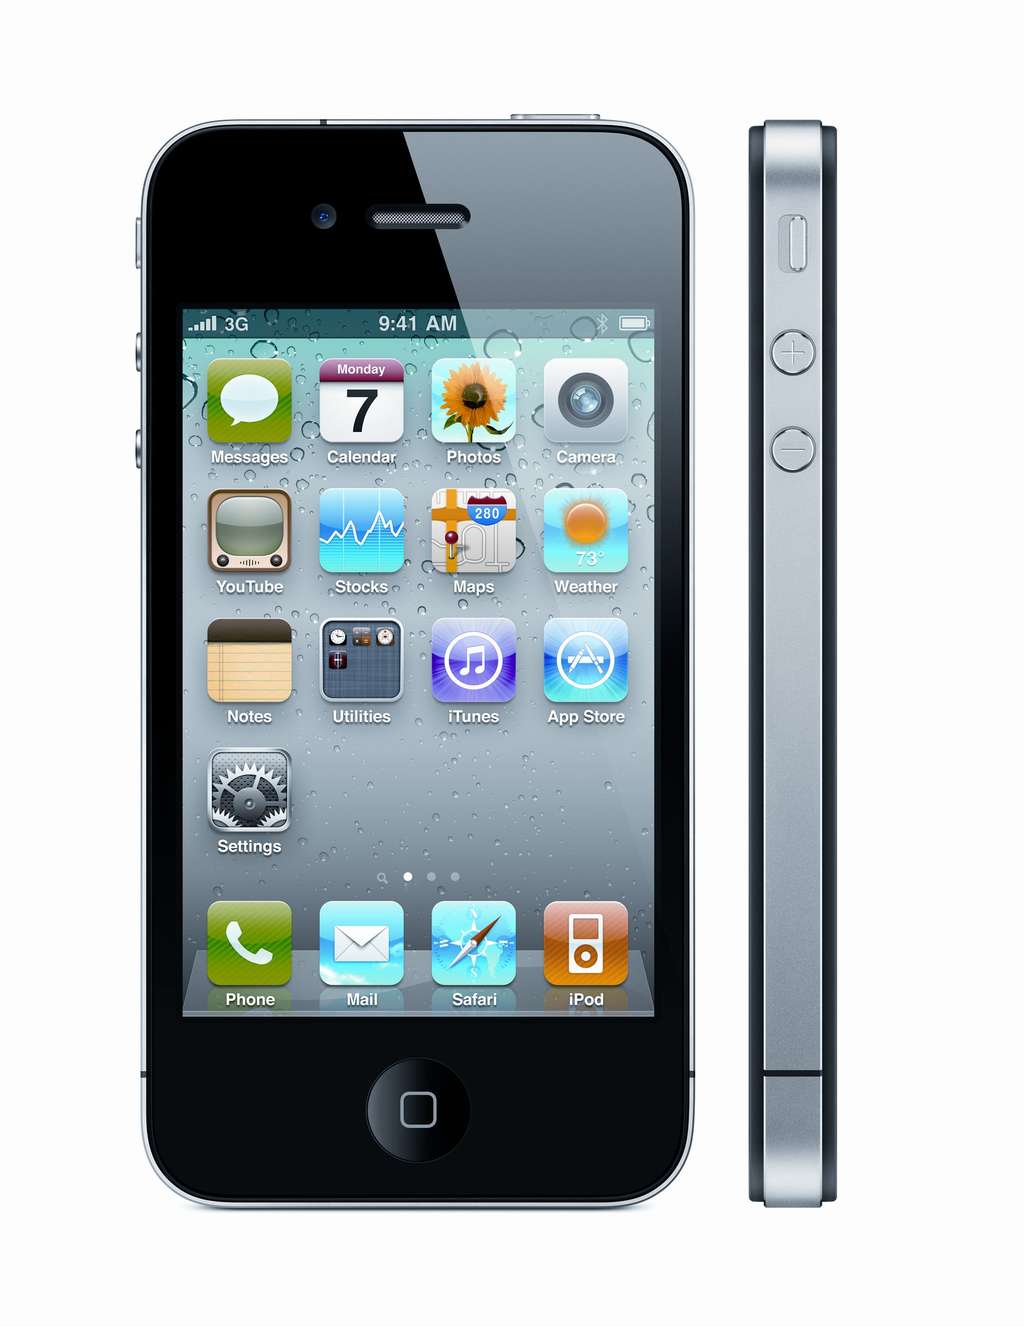 L'iPhone 4 est plus fin que ses prédécesseurs. © Apple